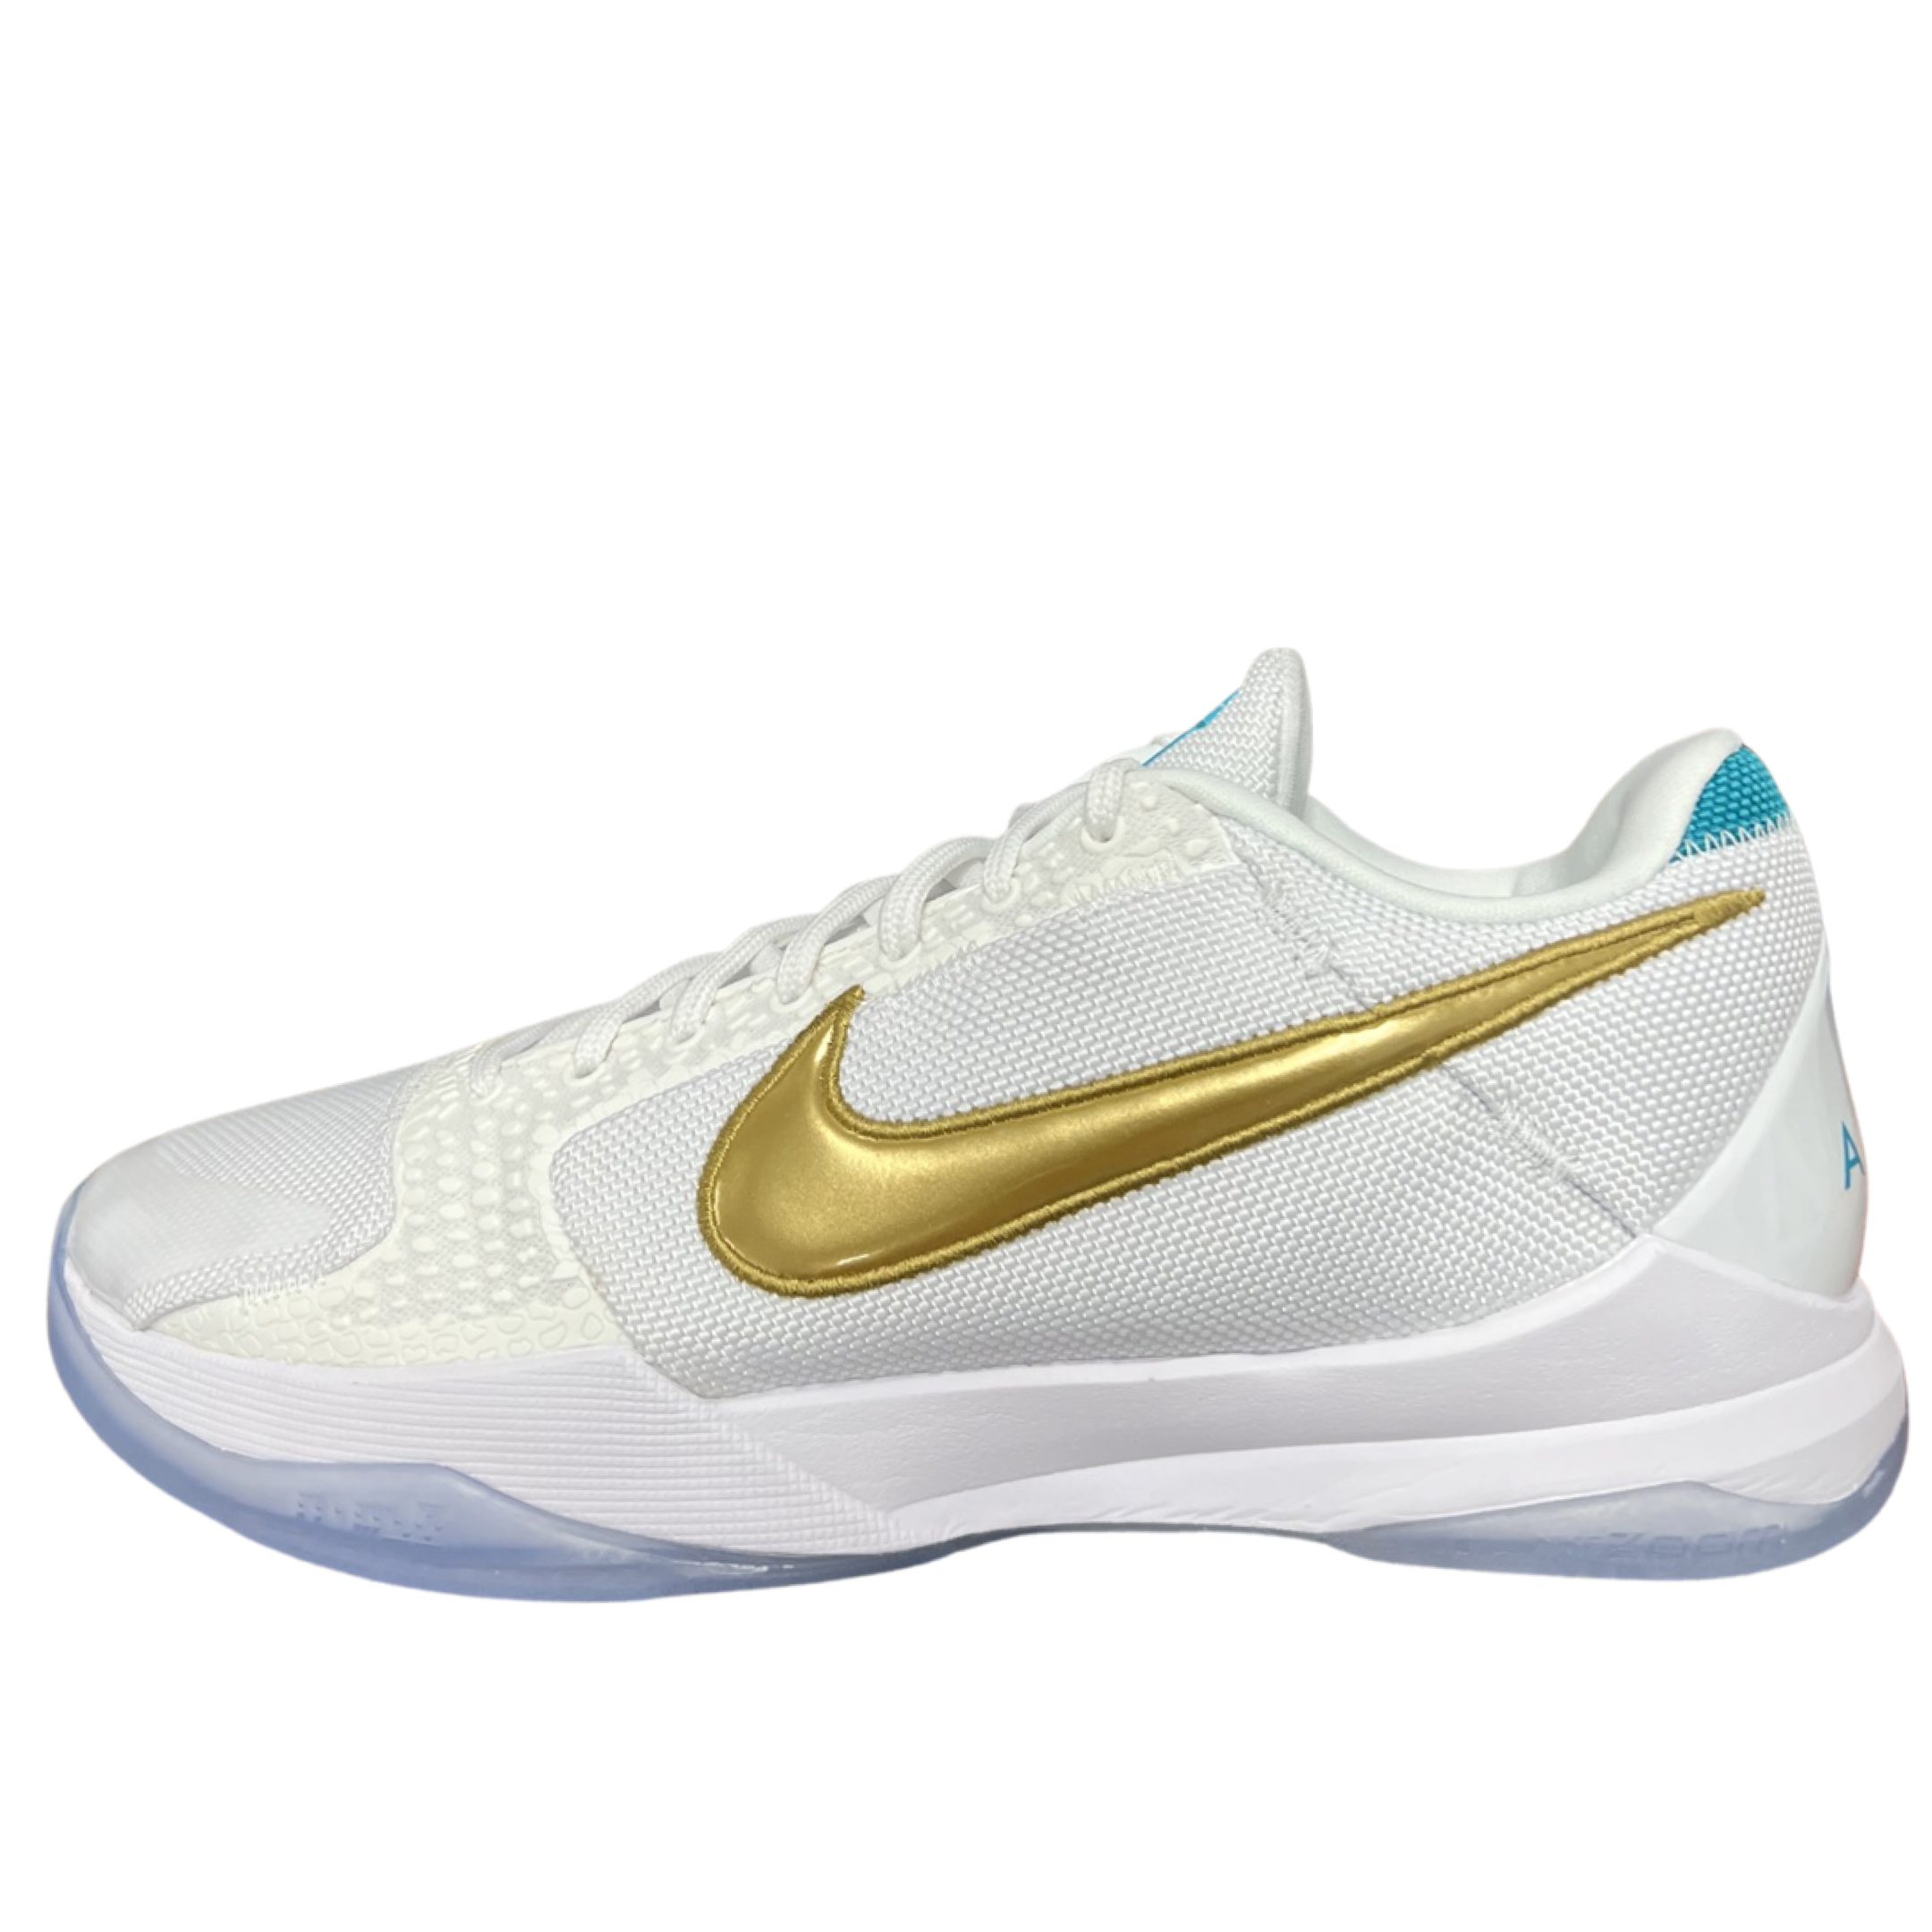 Nike Kobe5 protroUndefeatedWhat If White